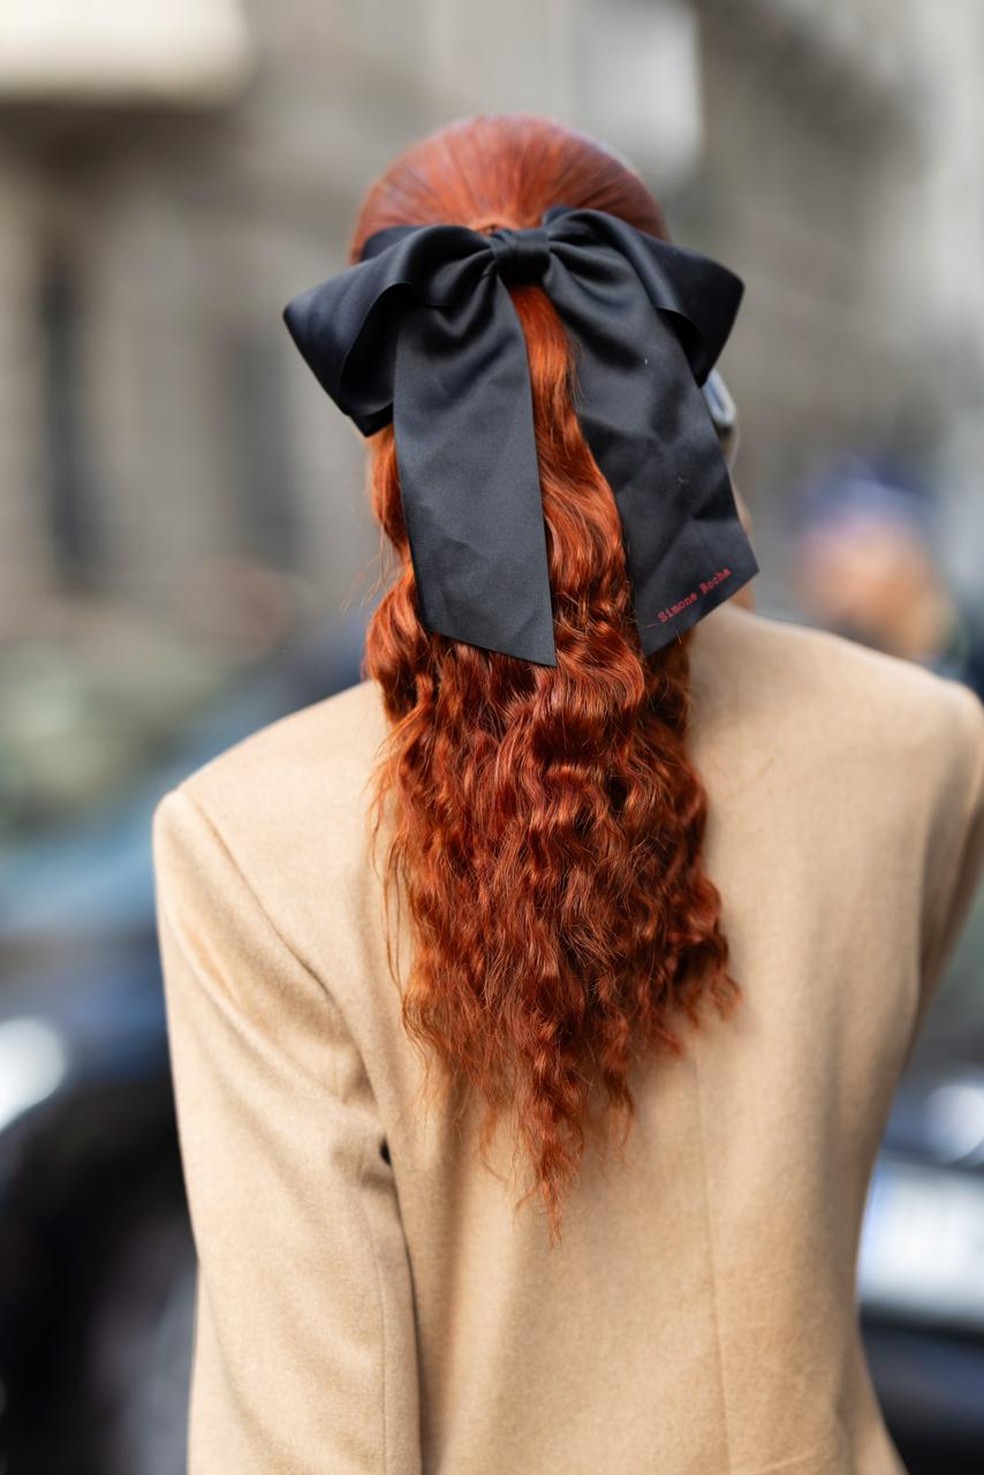 Laços também foram destaque na semana de moda de Milão — Foto: Getty Images